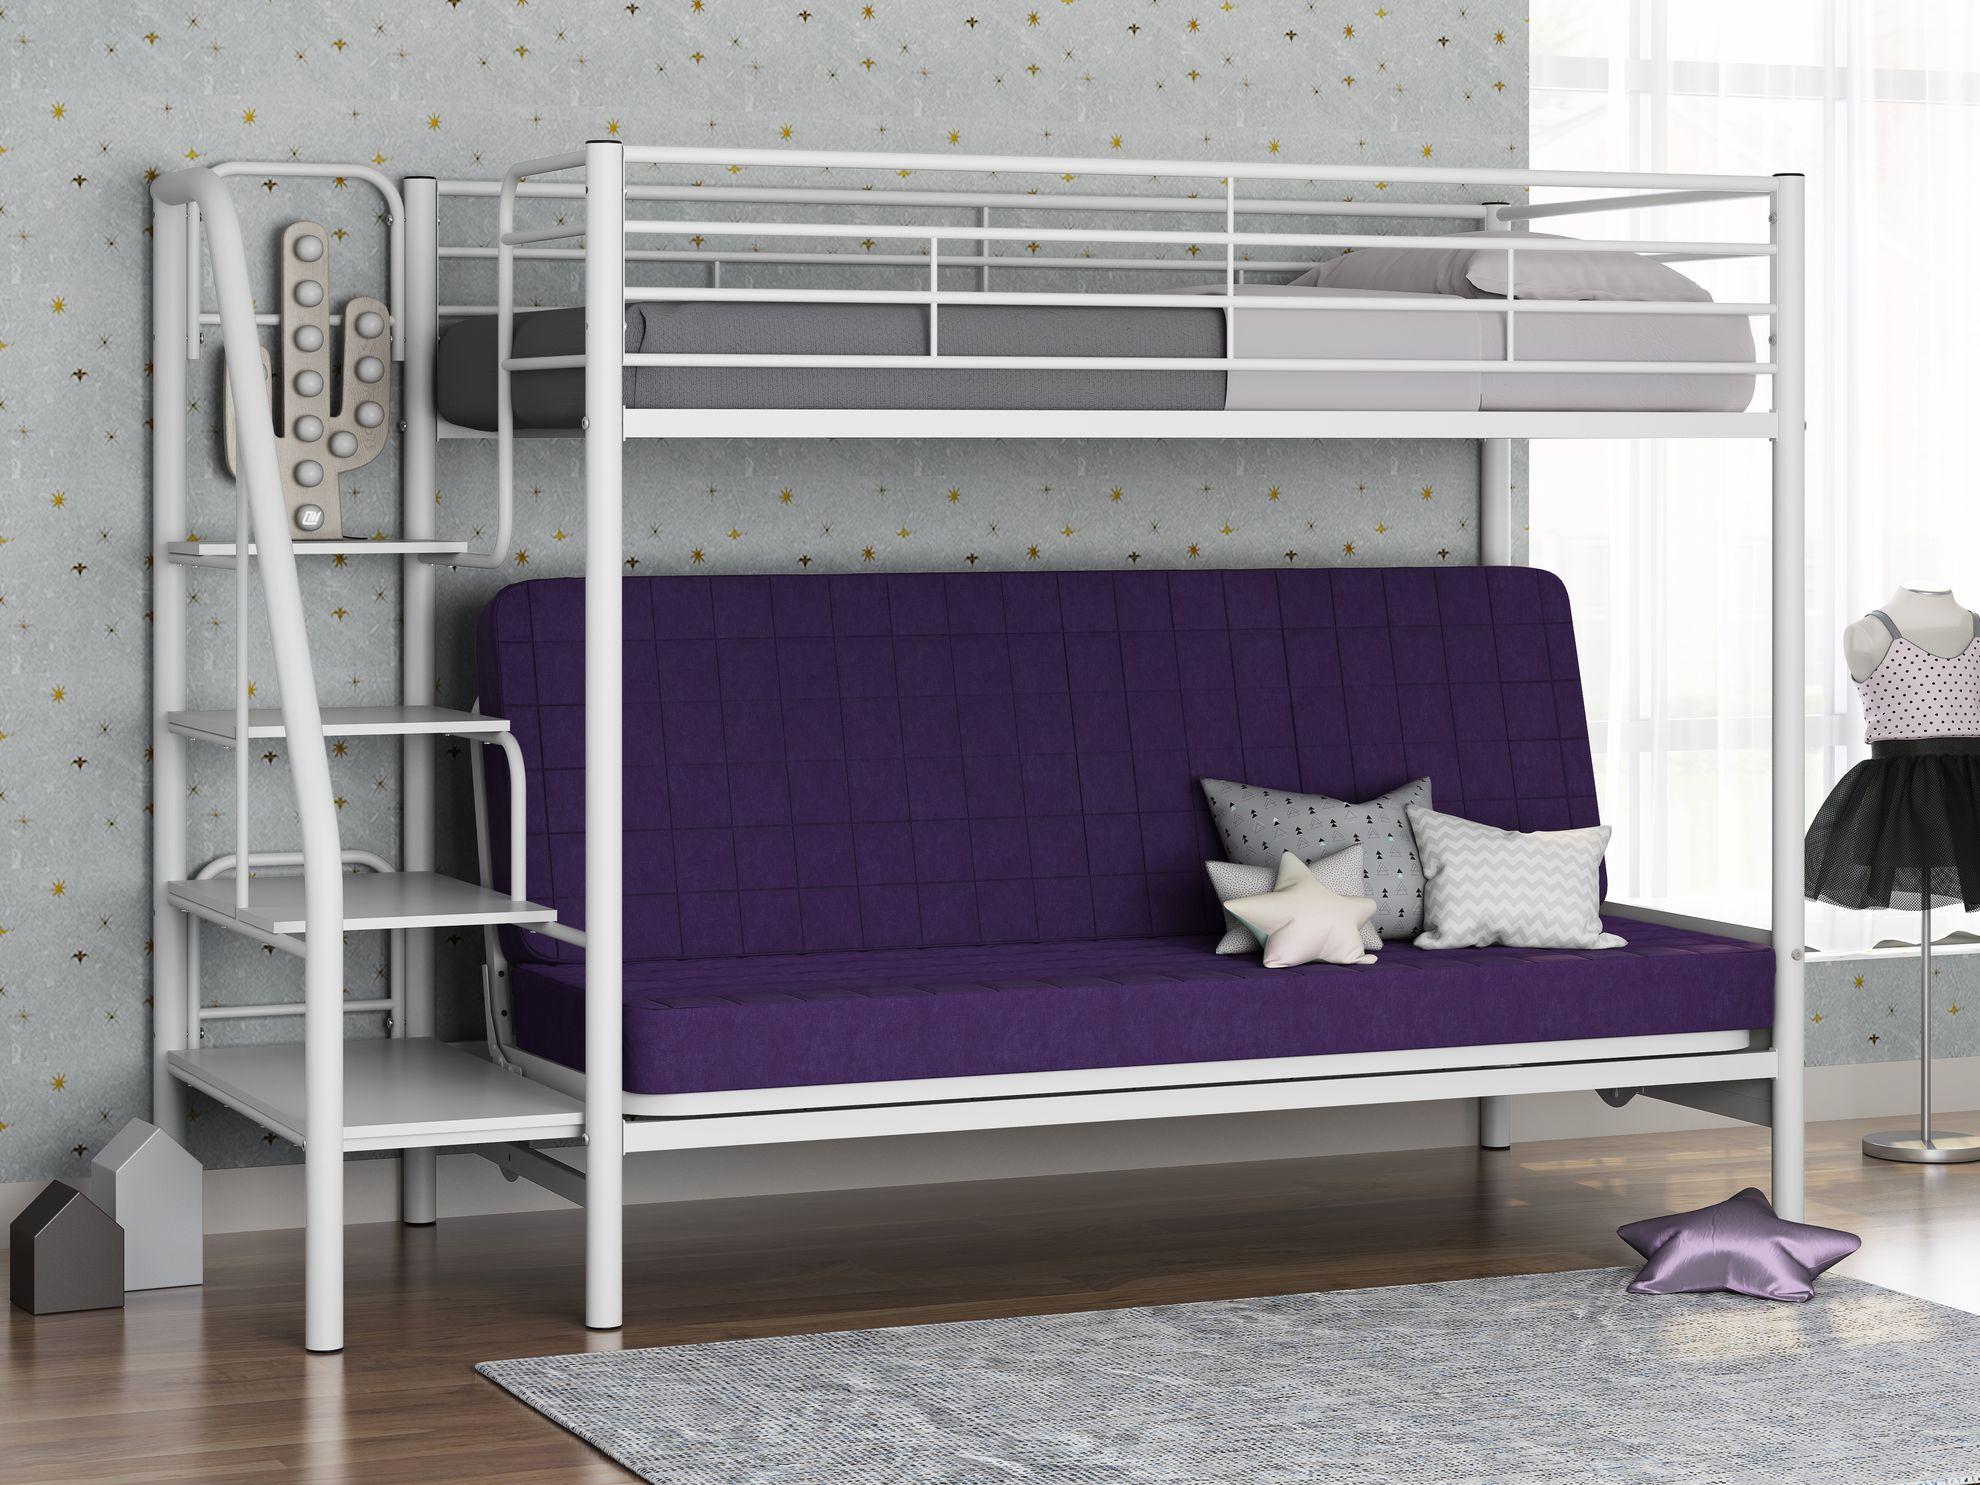 Двухъярусная кровать с диваном Мадлен 3 Белый/обивка Фиолетовый